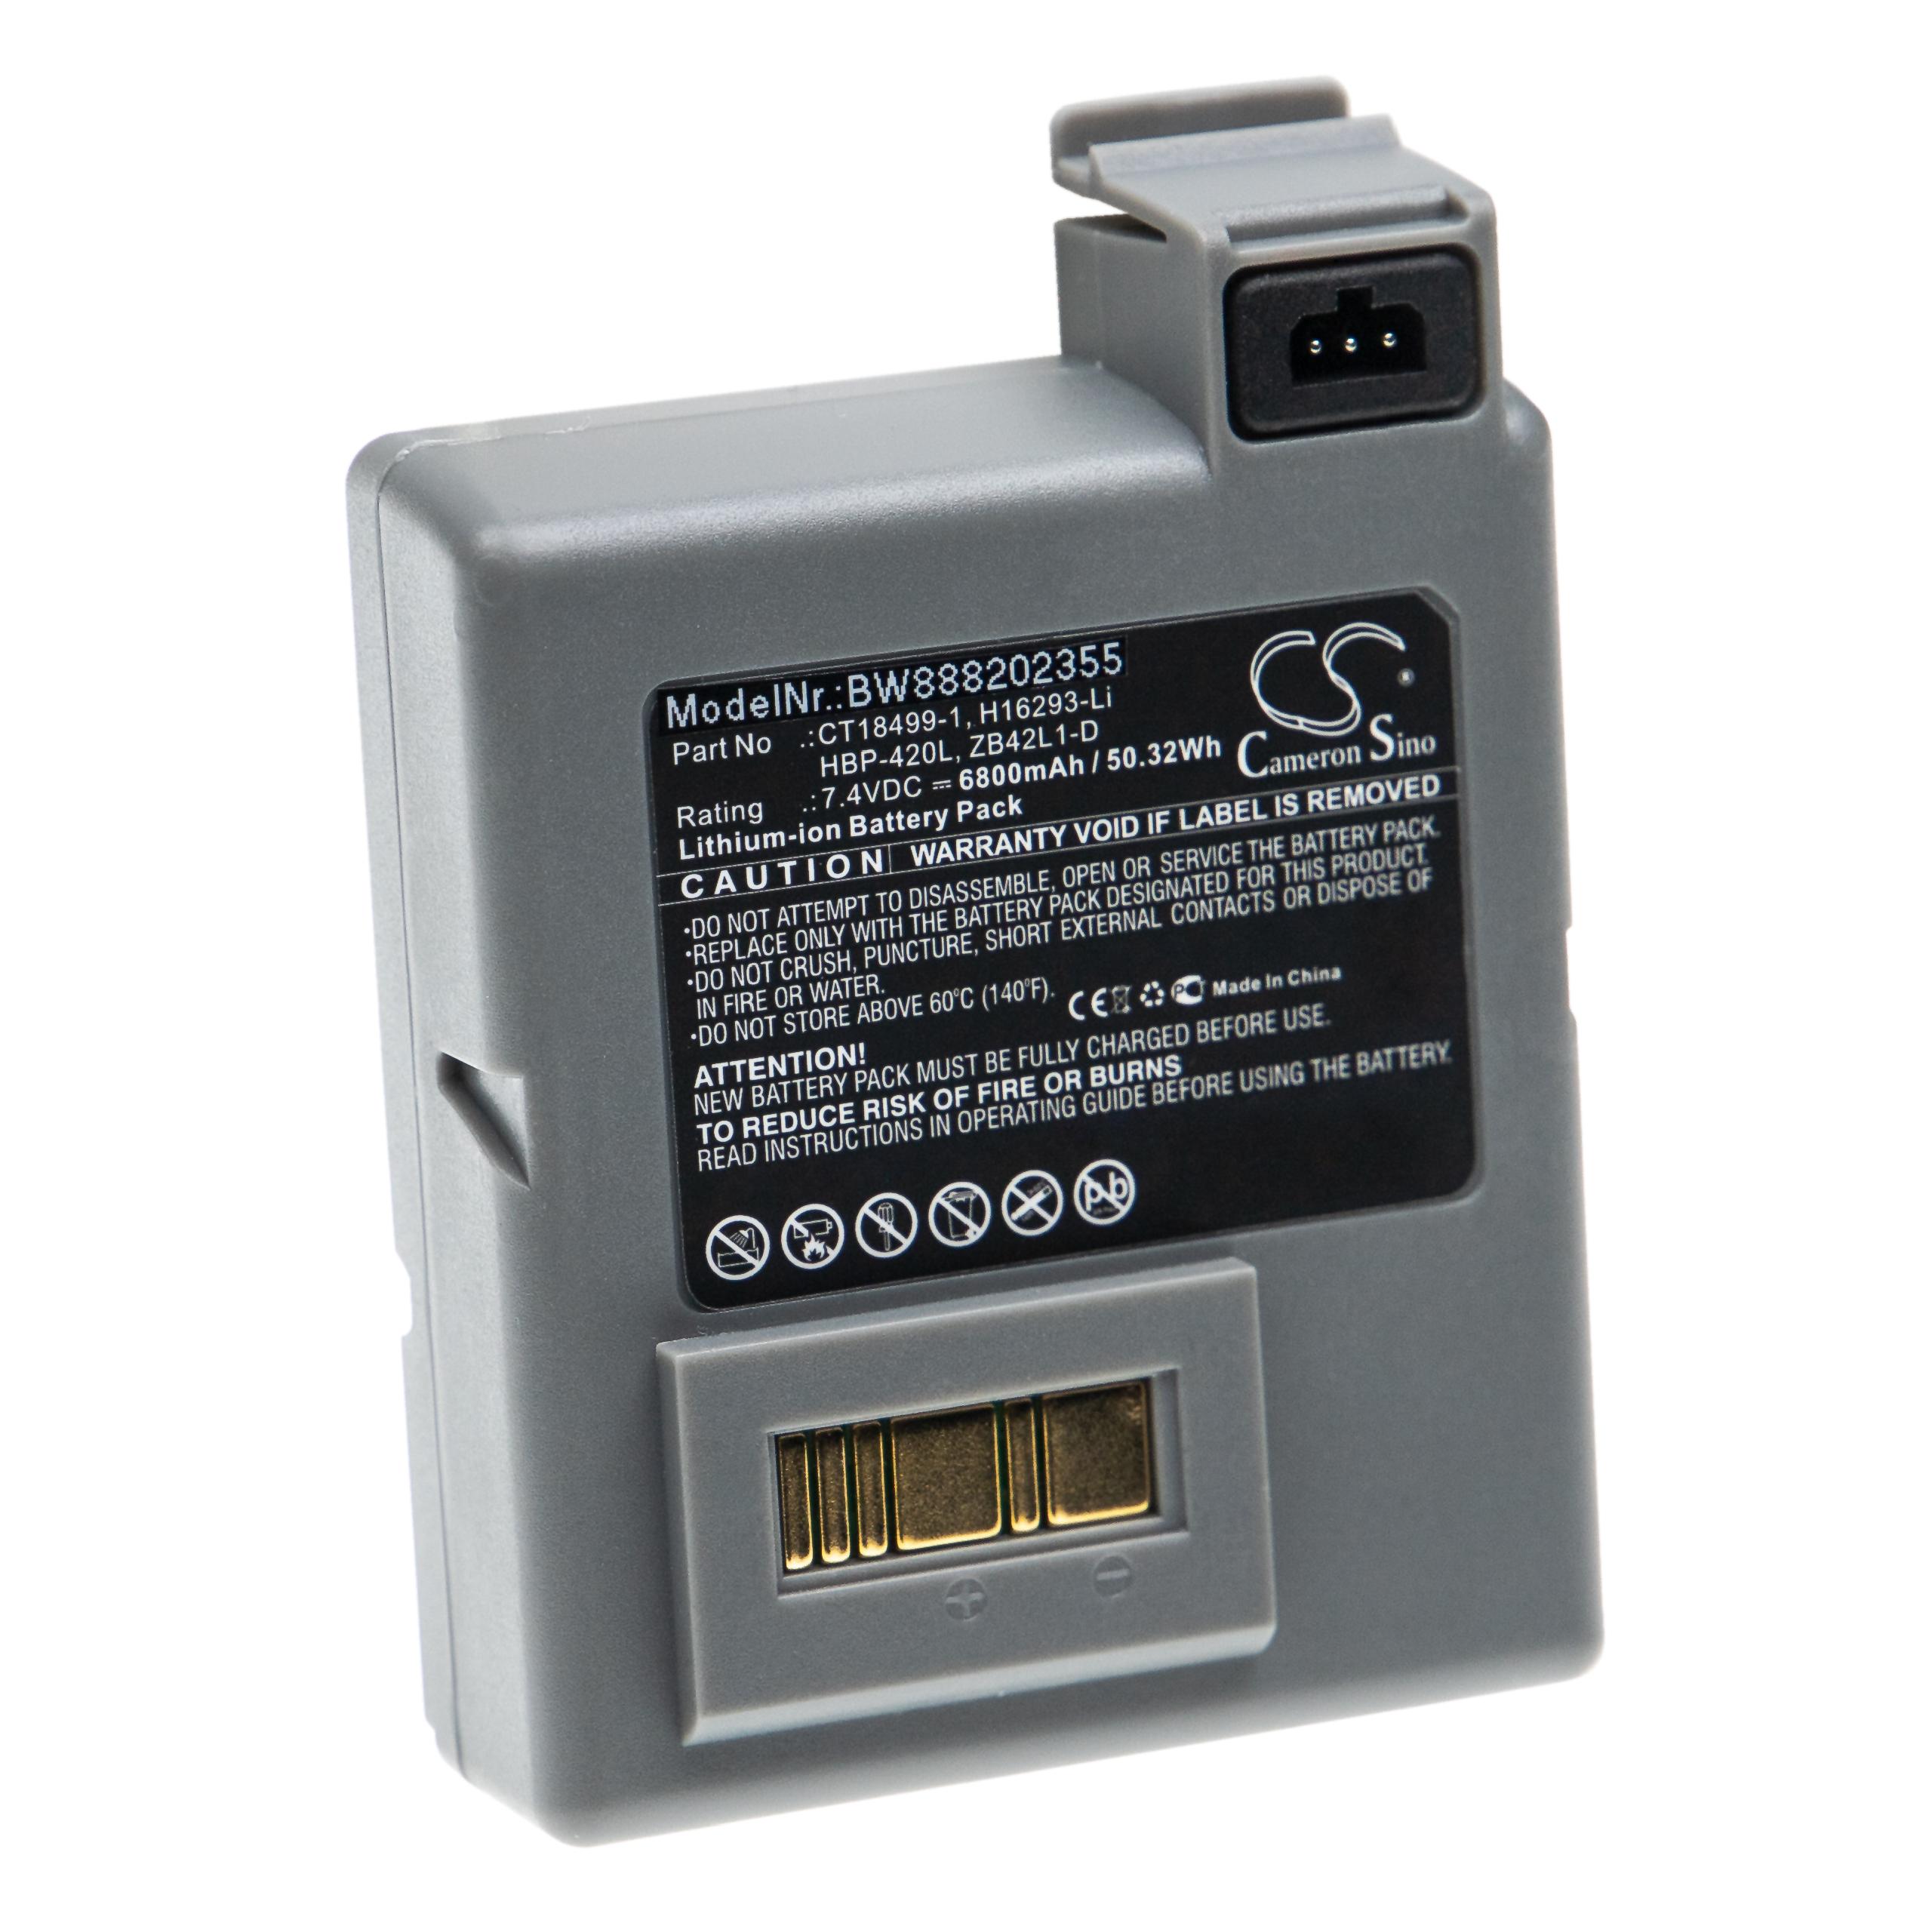 Batterie remplace Zebra ZB42L1-D, HBP-420L, H16293-Li, CT18499-1 pour imprimante - 6800mAh 7,4V Li-ion